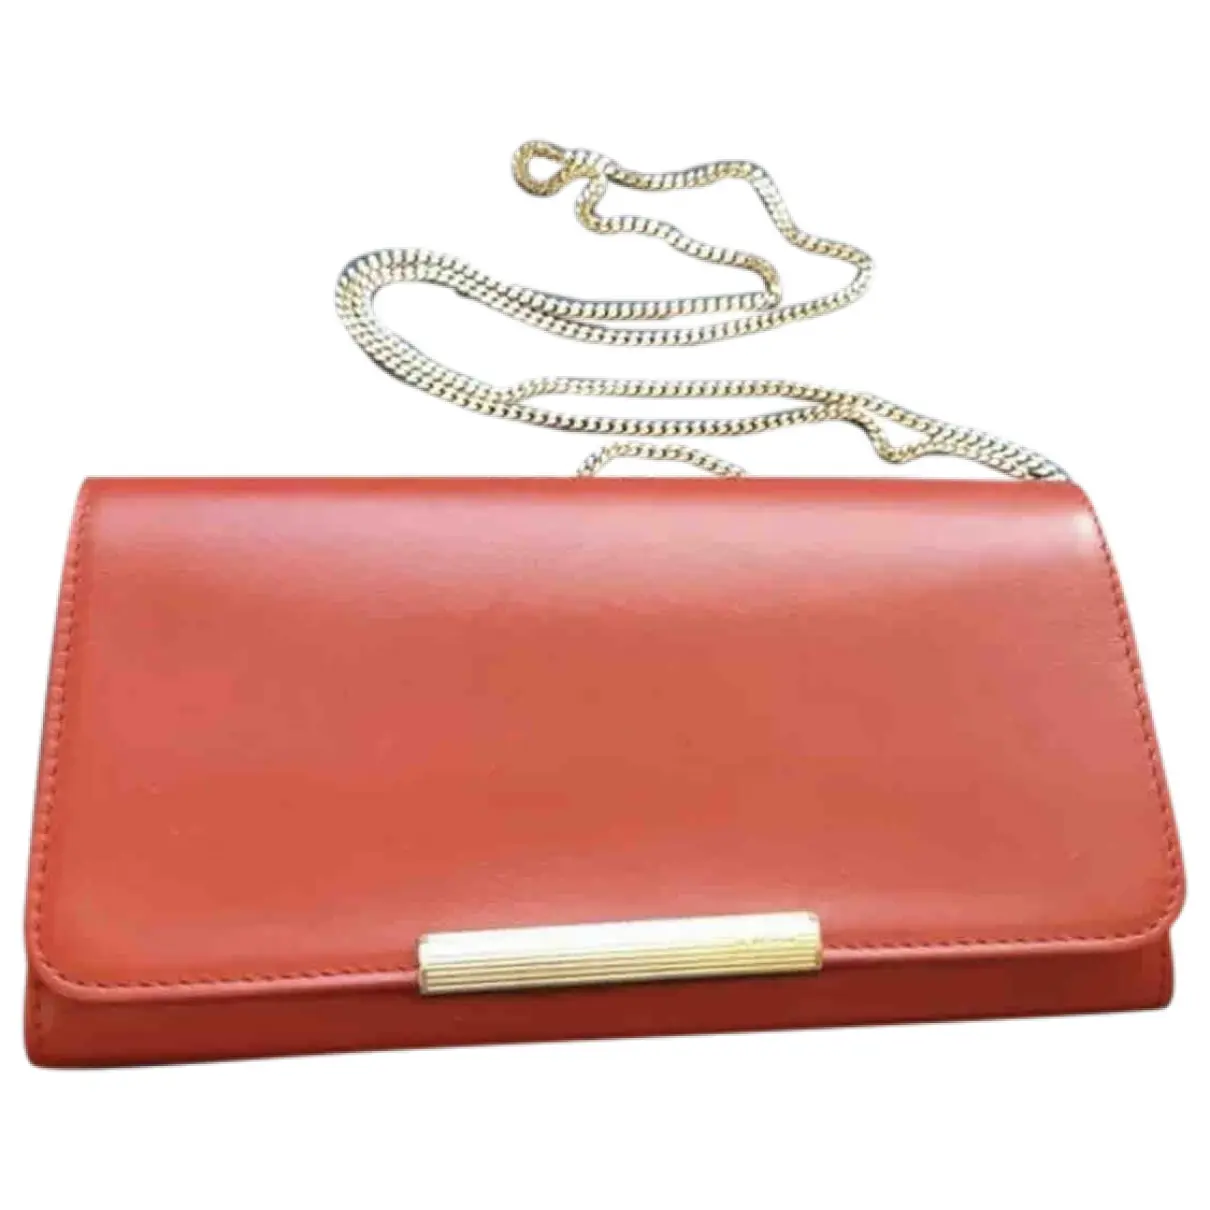 Leather clutch bag Emilio Pucci